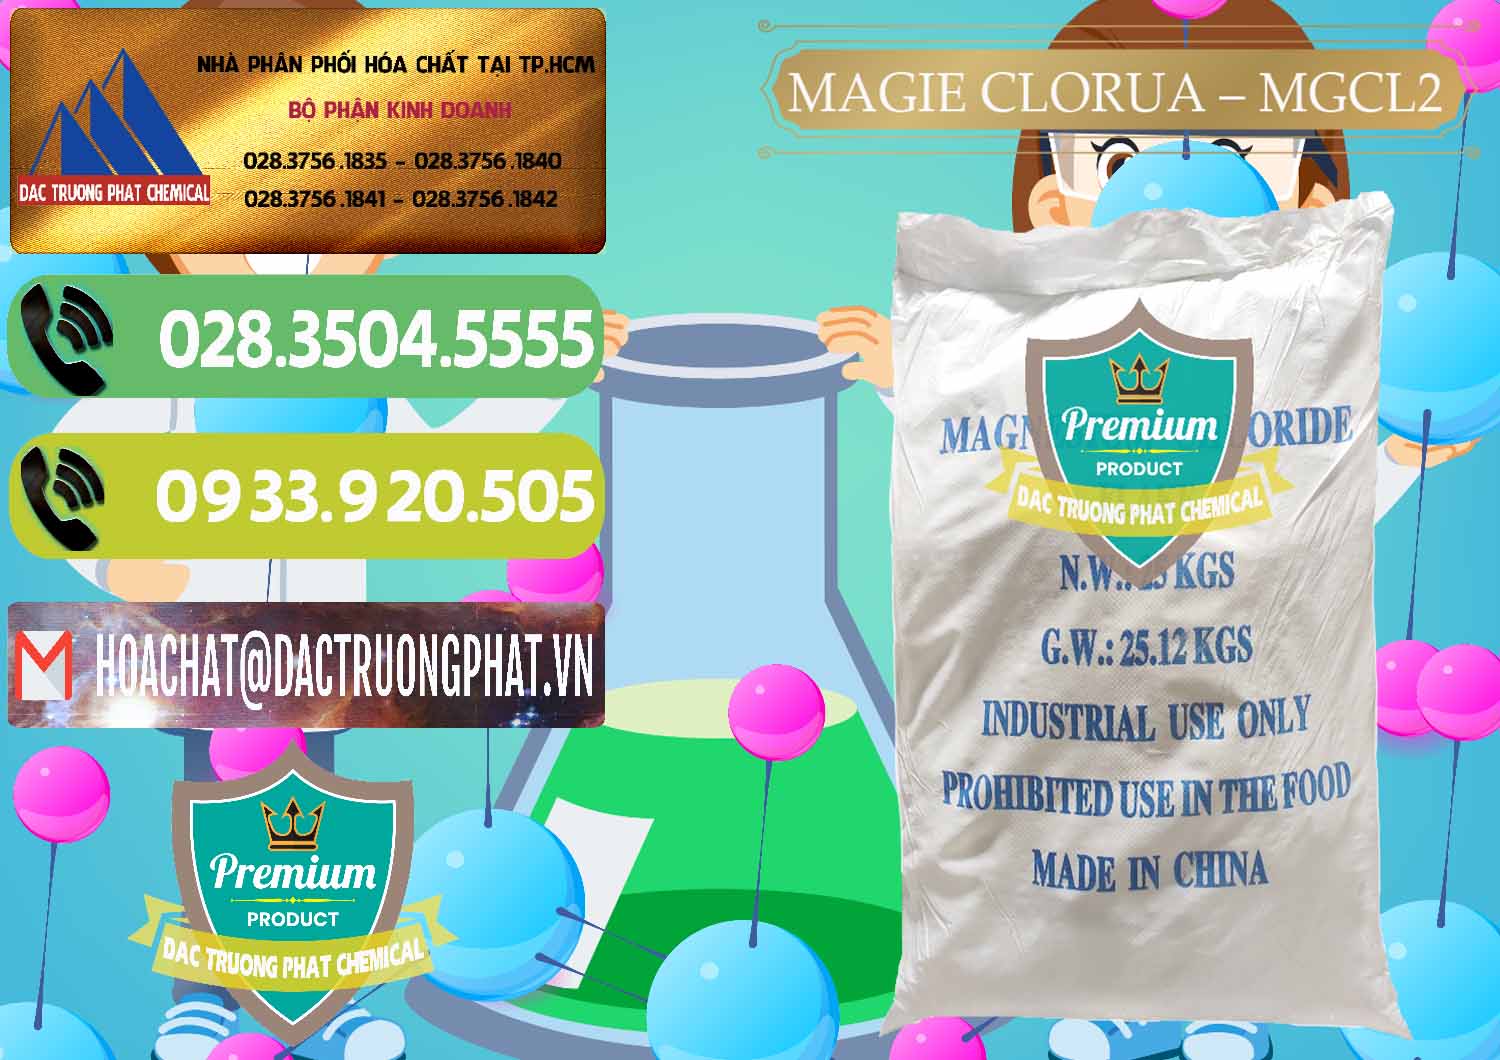 Nơi cung cấp & bán Magie Clorua – MGCL2 96% Dạng Vảy Trung Quốc China - 0091 - Kinh doanh - cung cấp hóa chất tại TP.HCM - hoachatmientay.vn